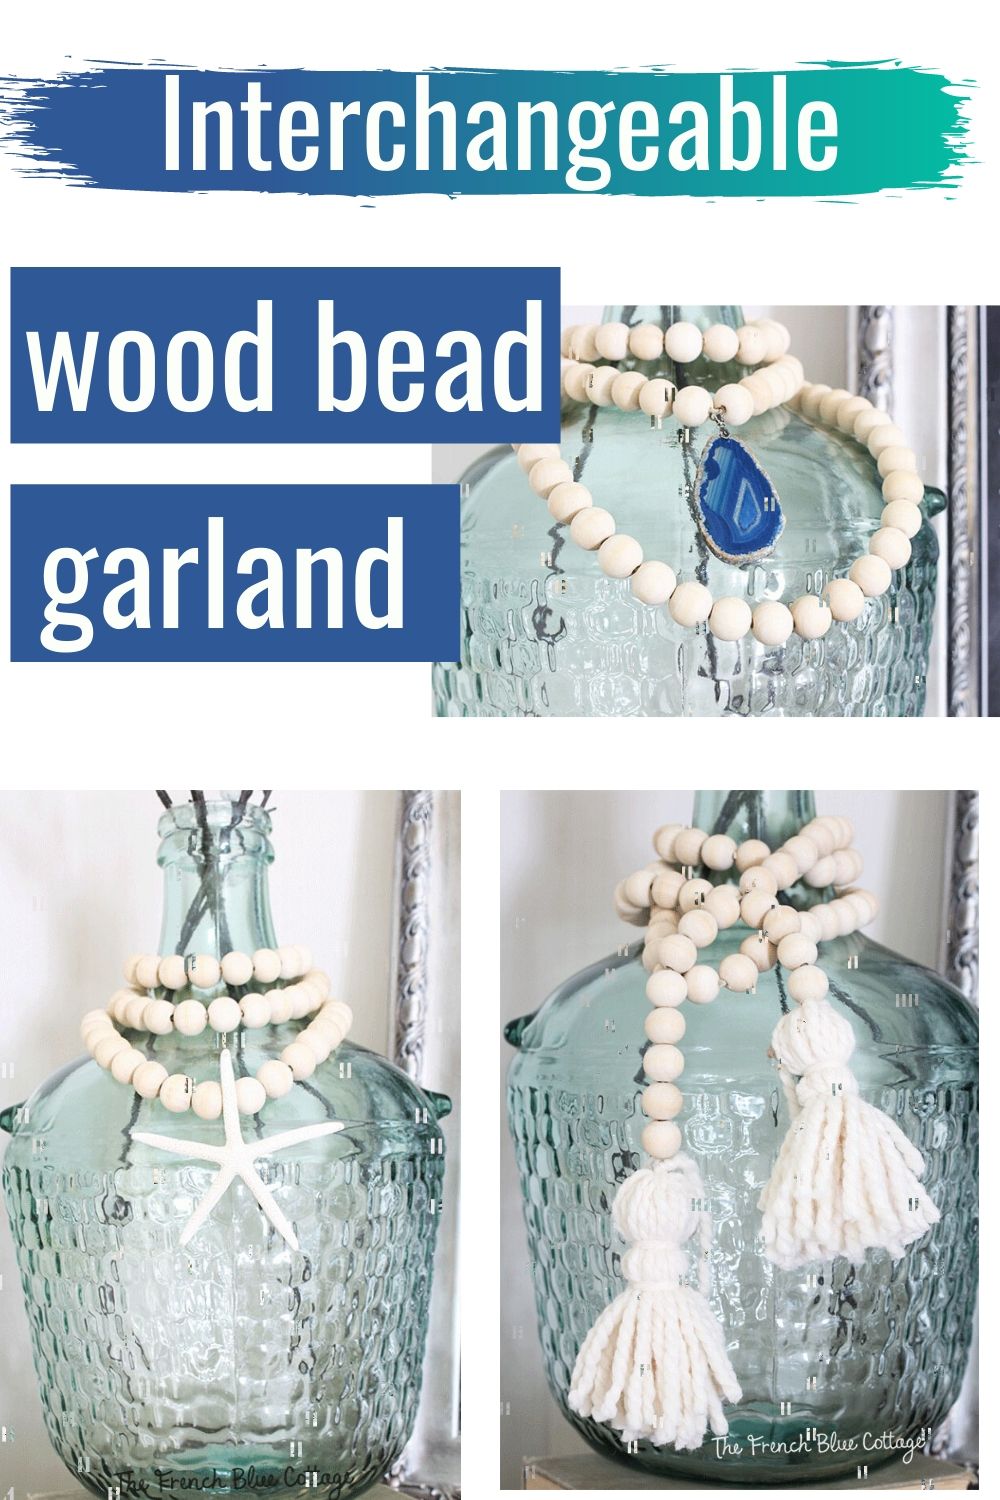 wood bead garland with interchangeable pendants